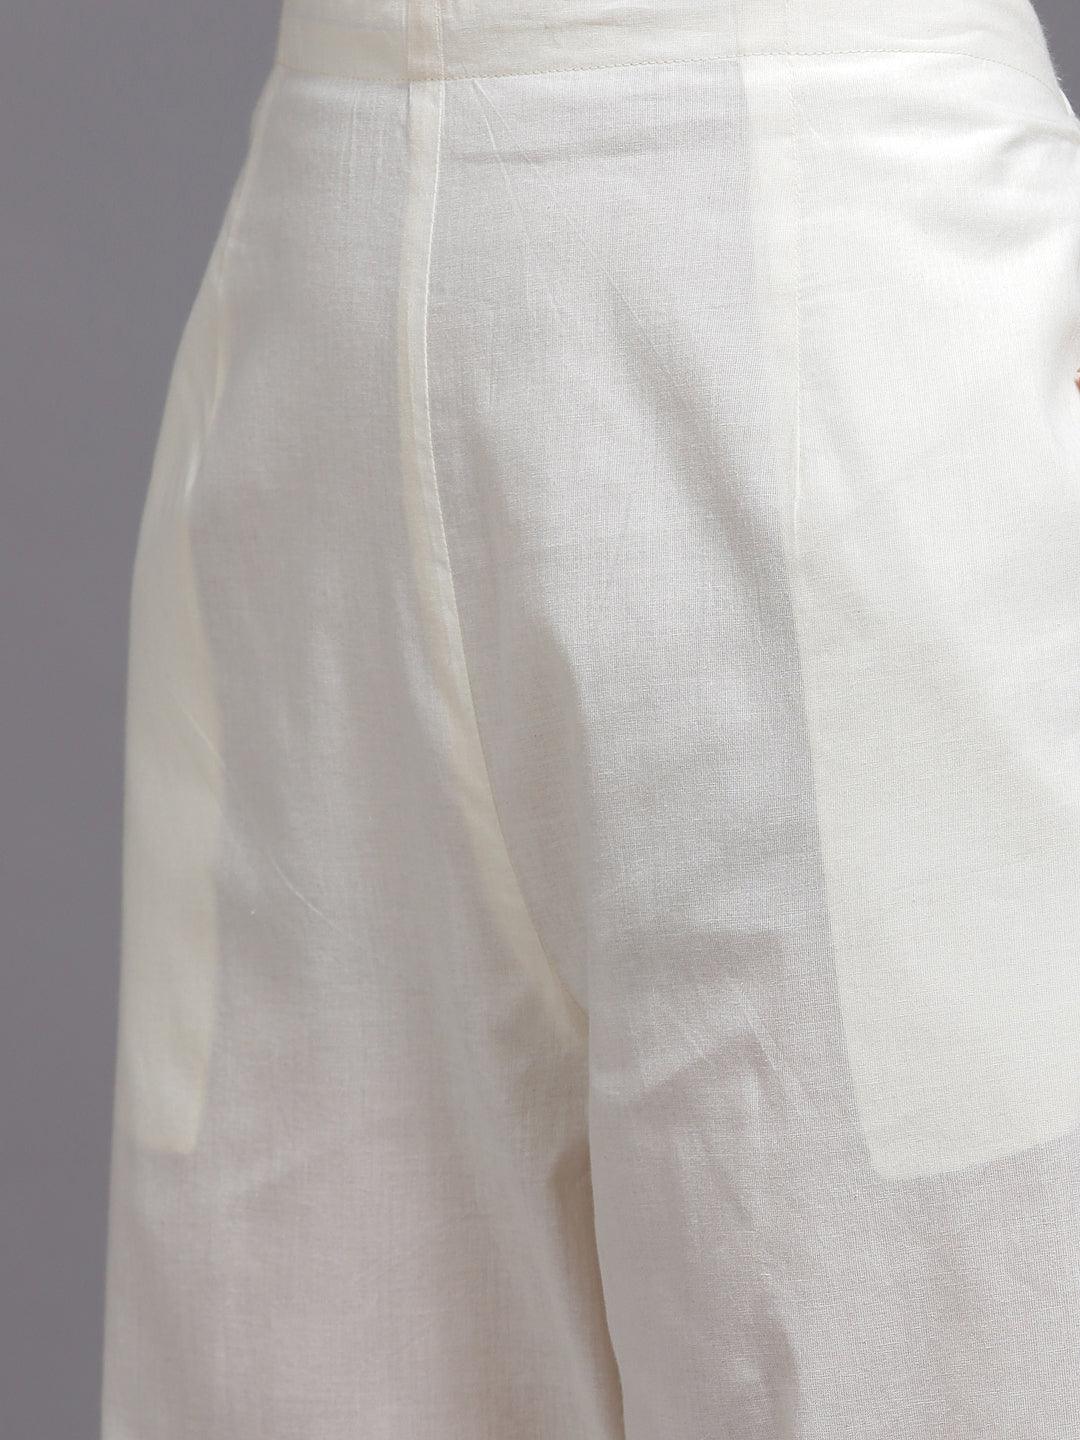 Off White Yoke Design Cotton Suit Set - Libas